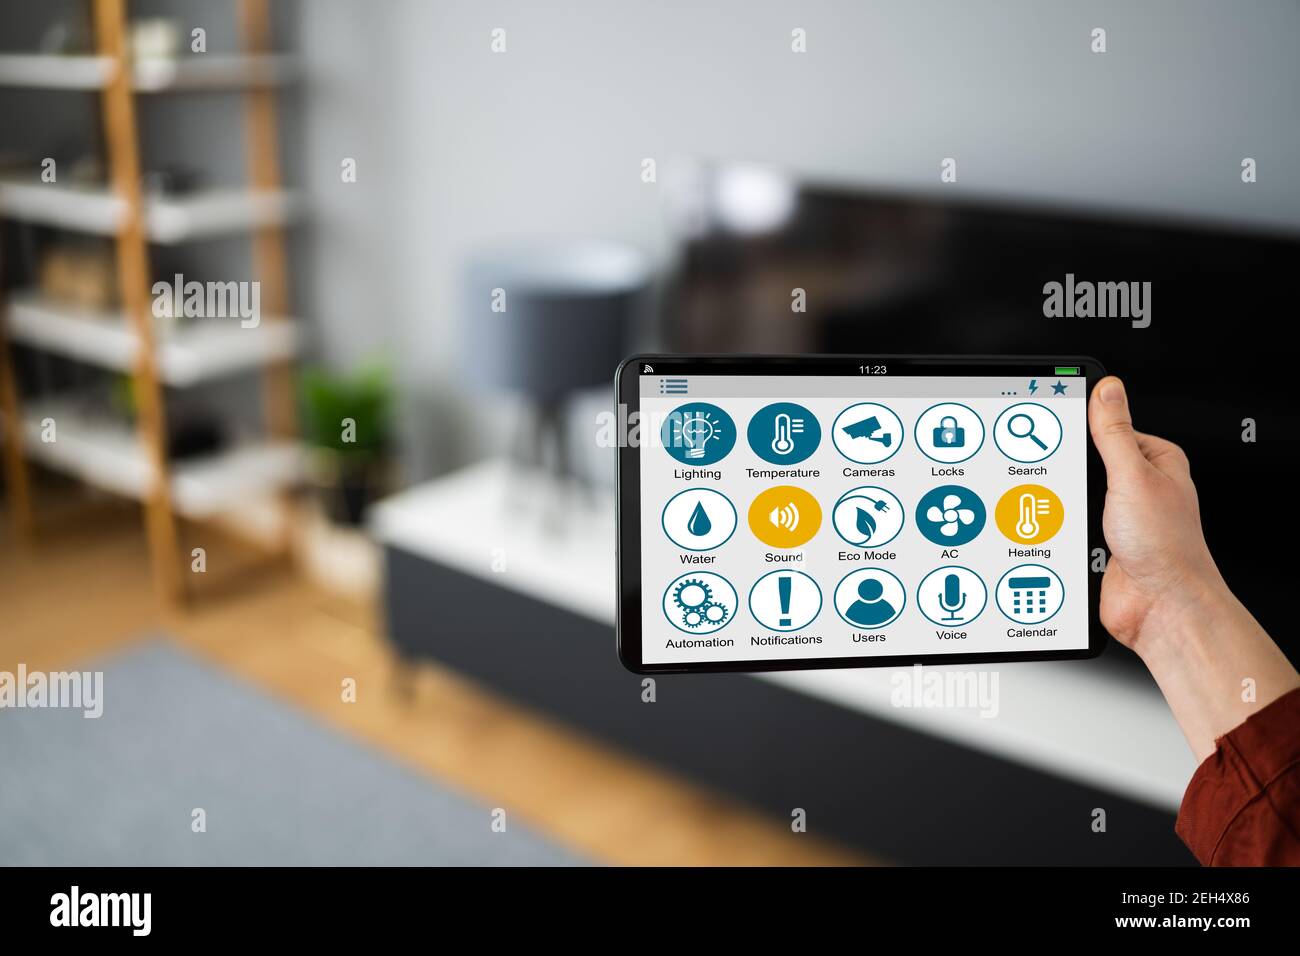 Utilisation de la technologie d'automatisation de la maison et des gadgets technologiques IOT Banque D'Images